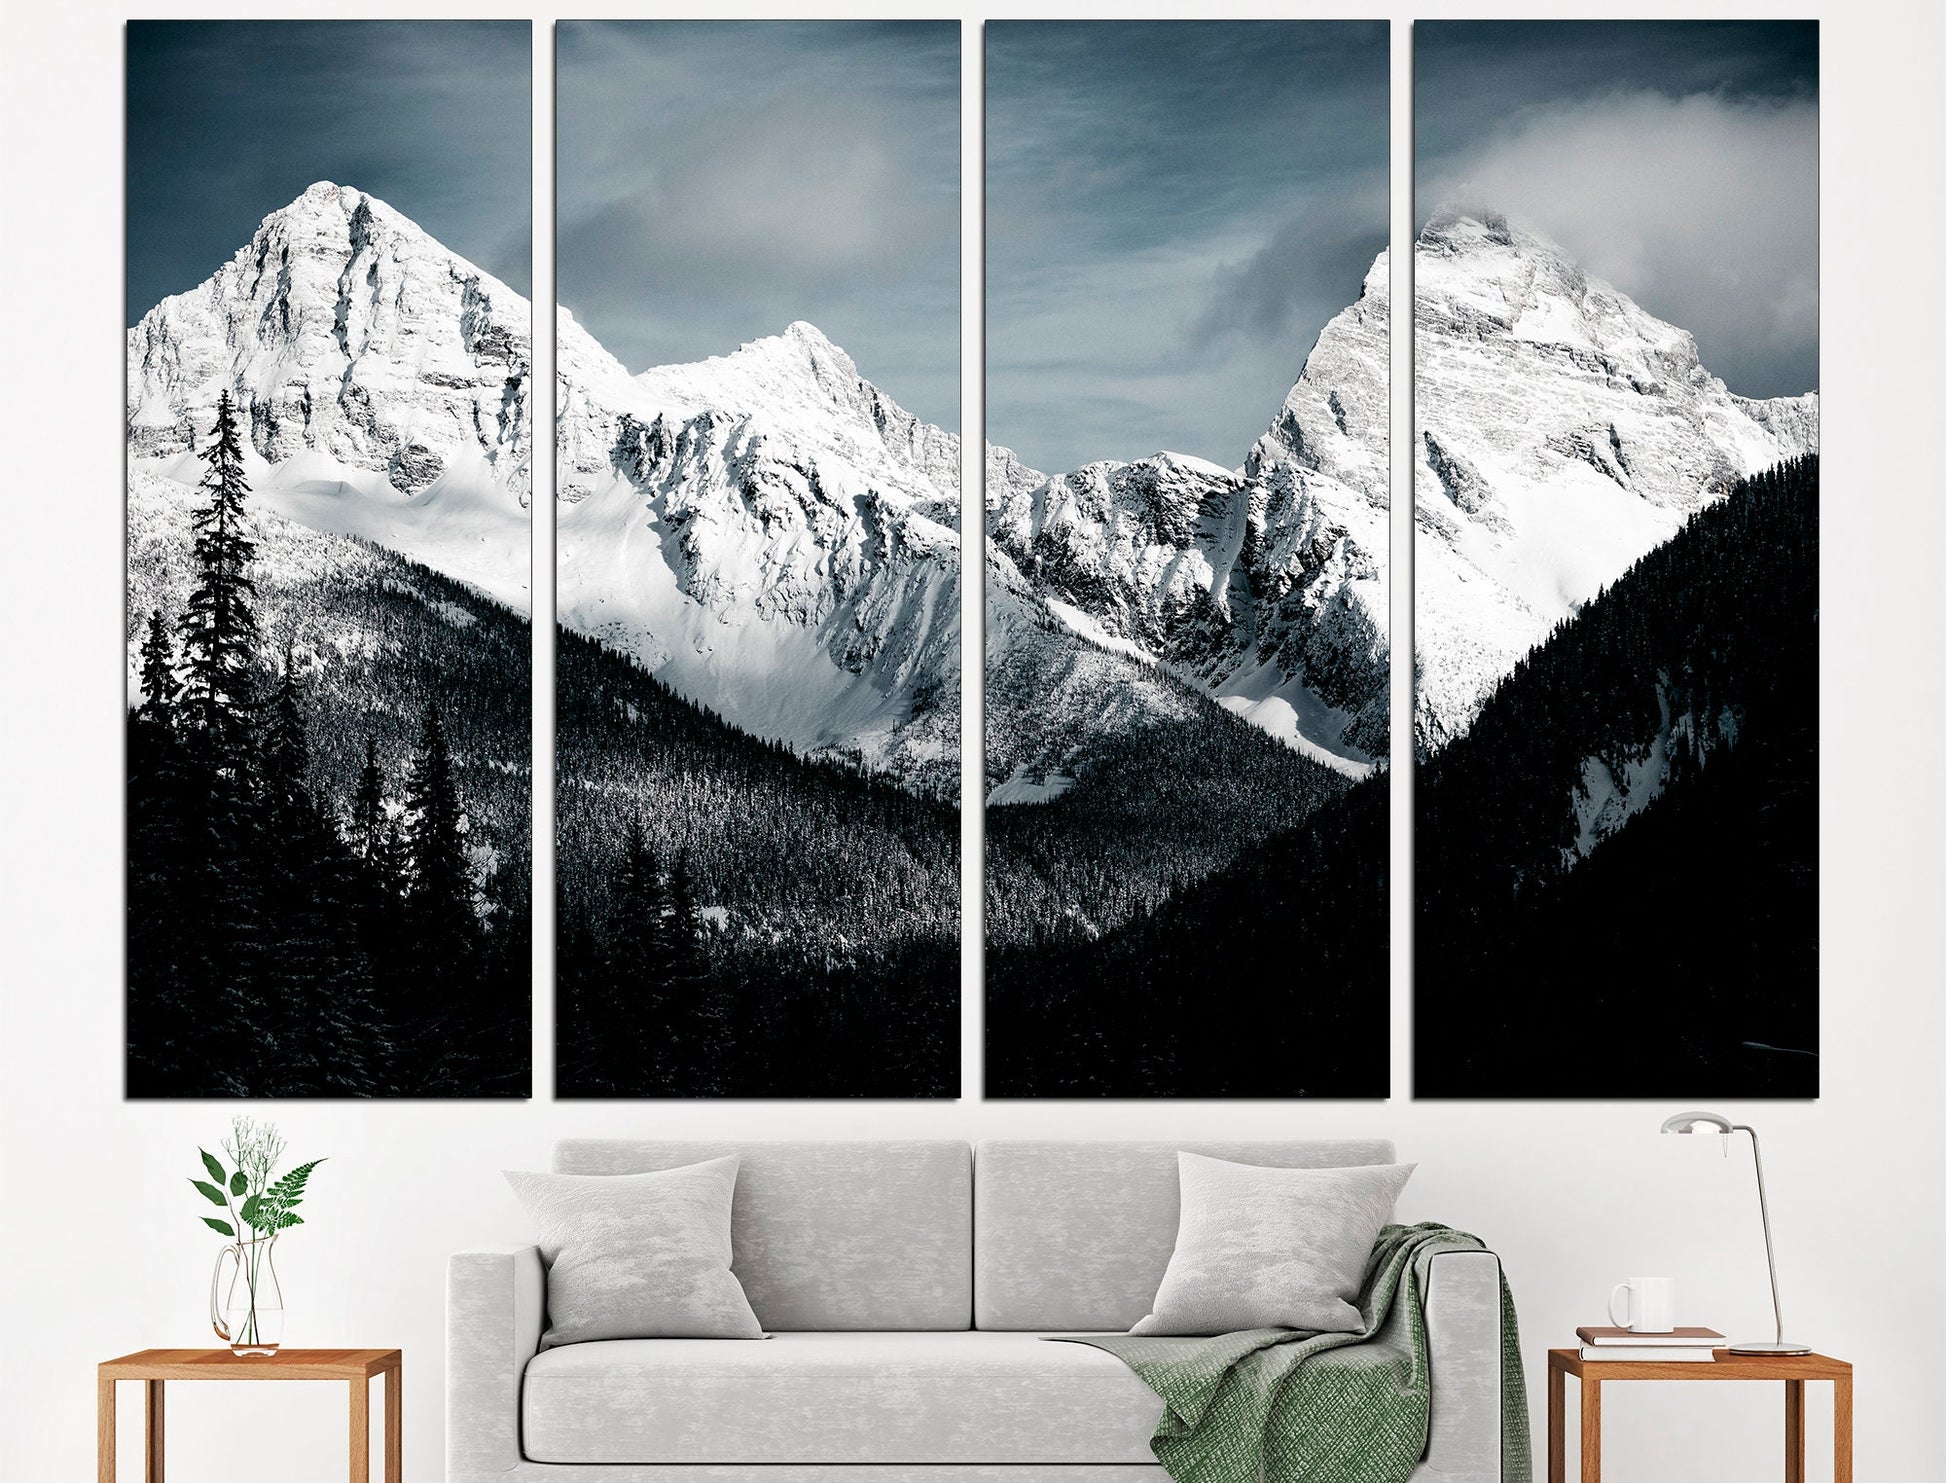 Black White Mountain Black And White Art Mountain Wall Art, Mountain Landscape Mountain Print Mountain Wall Decor